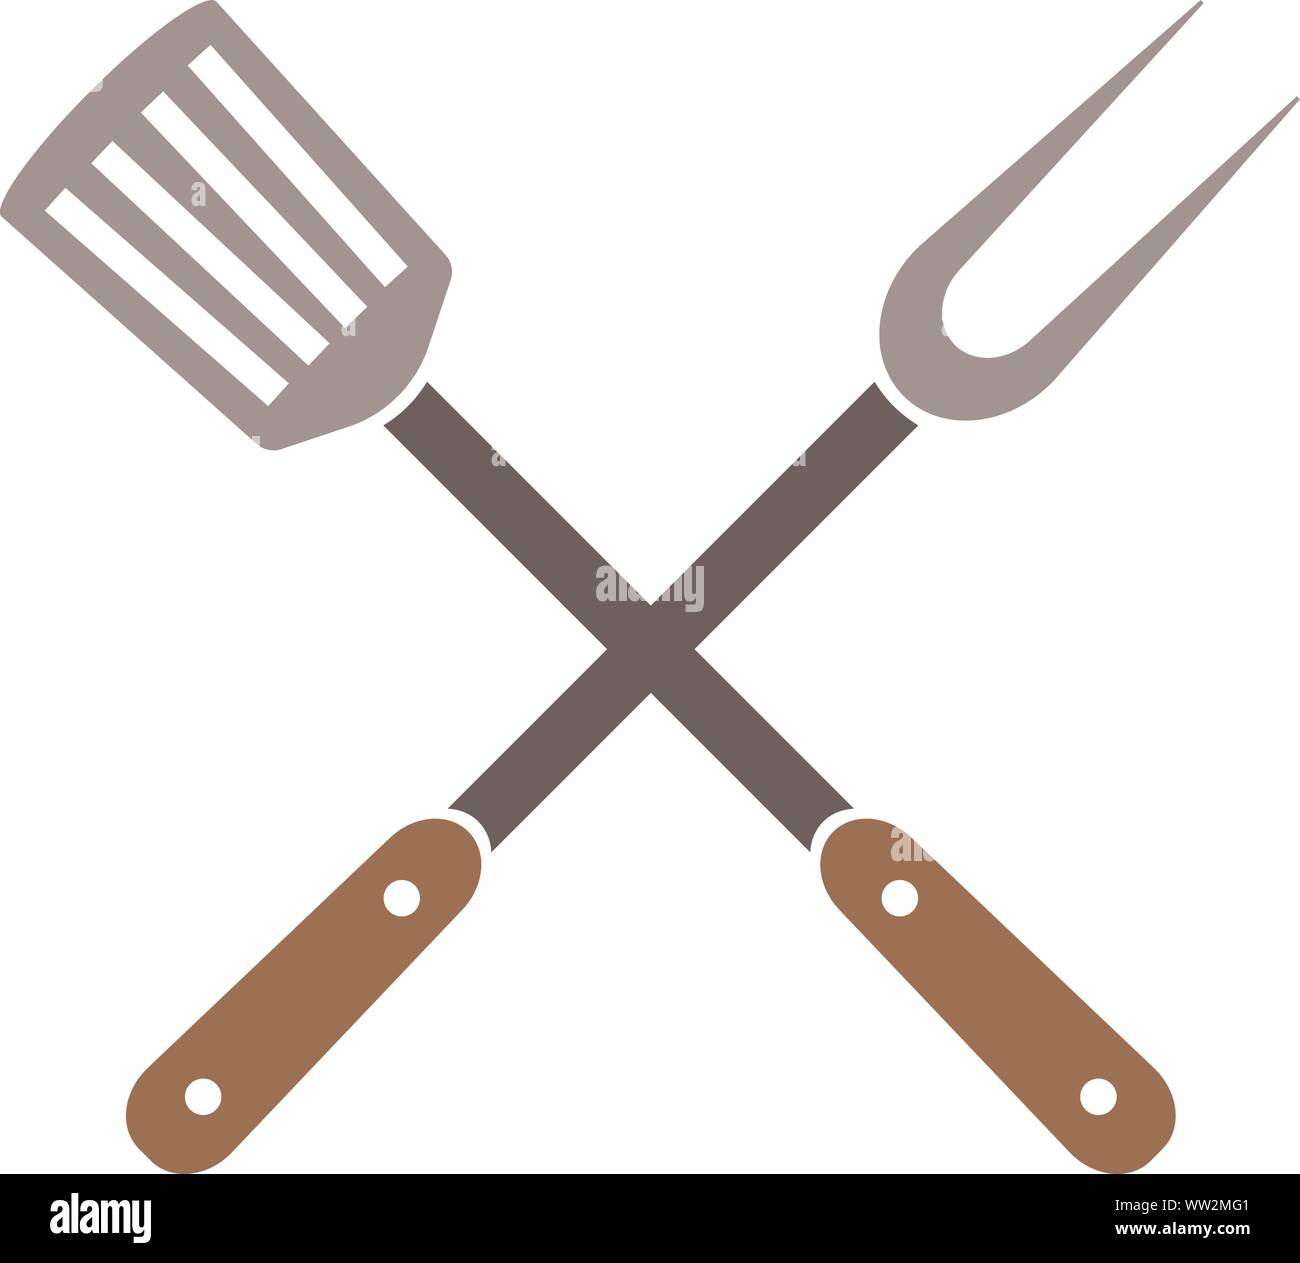 Attraversato gli utensili da cucina, grill forcella e la schiumarola, illustrazione vettoriale Illustrazione Vettoriale